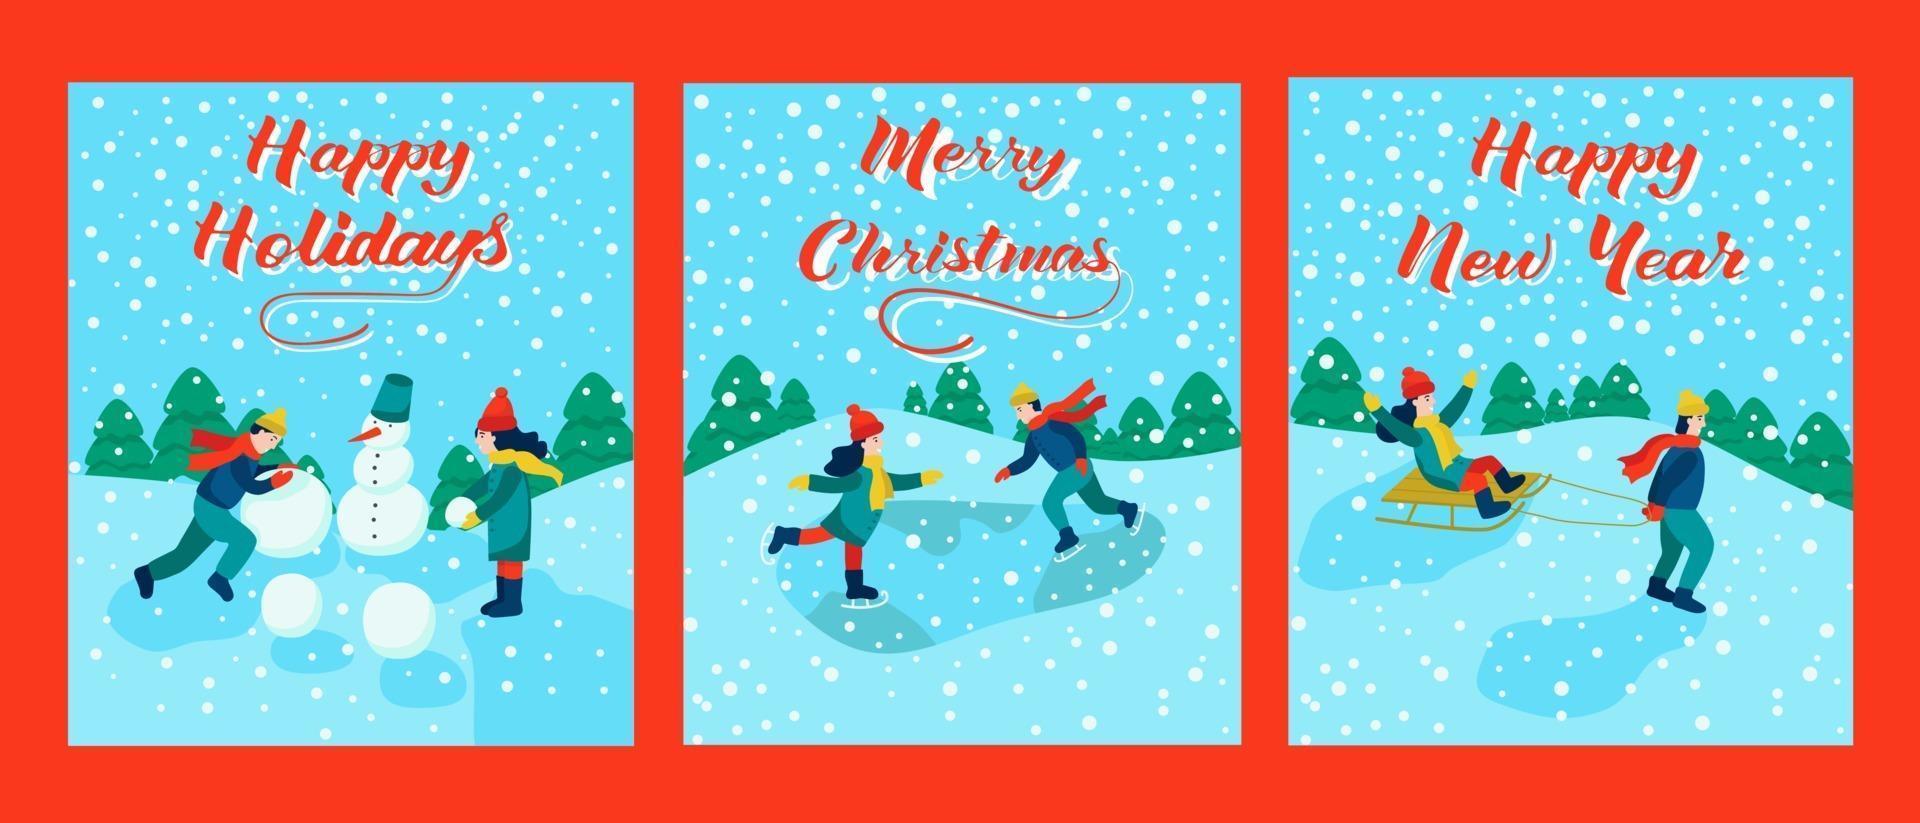 set kerstkaarten. belettering happy christmas, happy new year, happy holidays. kinderen gaan sleeën, schaatsen, een sneeuwpop maken. vector illustratie.